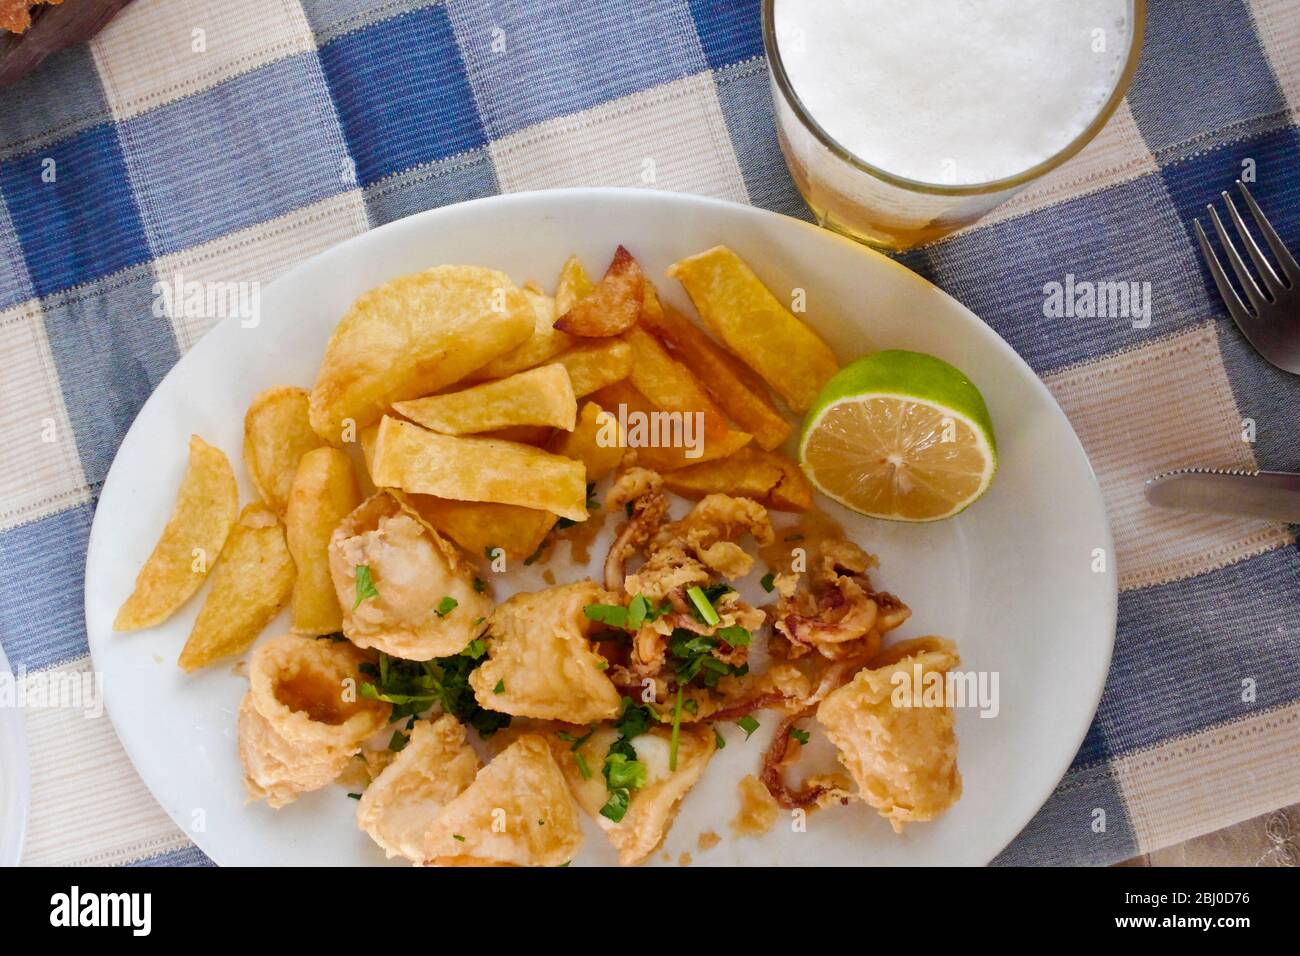 Deepfried Tintenfisch mit Chips am Strand Restaurant im Süden Zyperns - Stockfoto